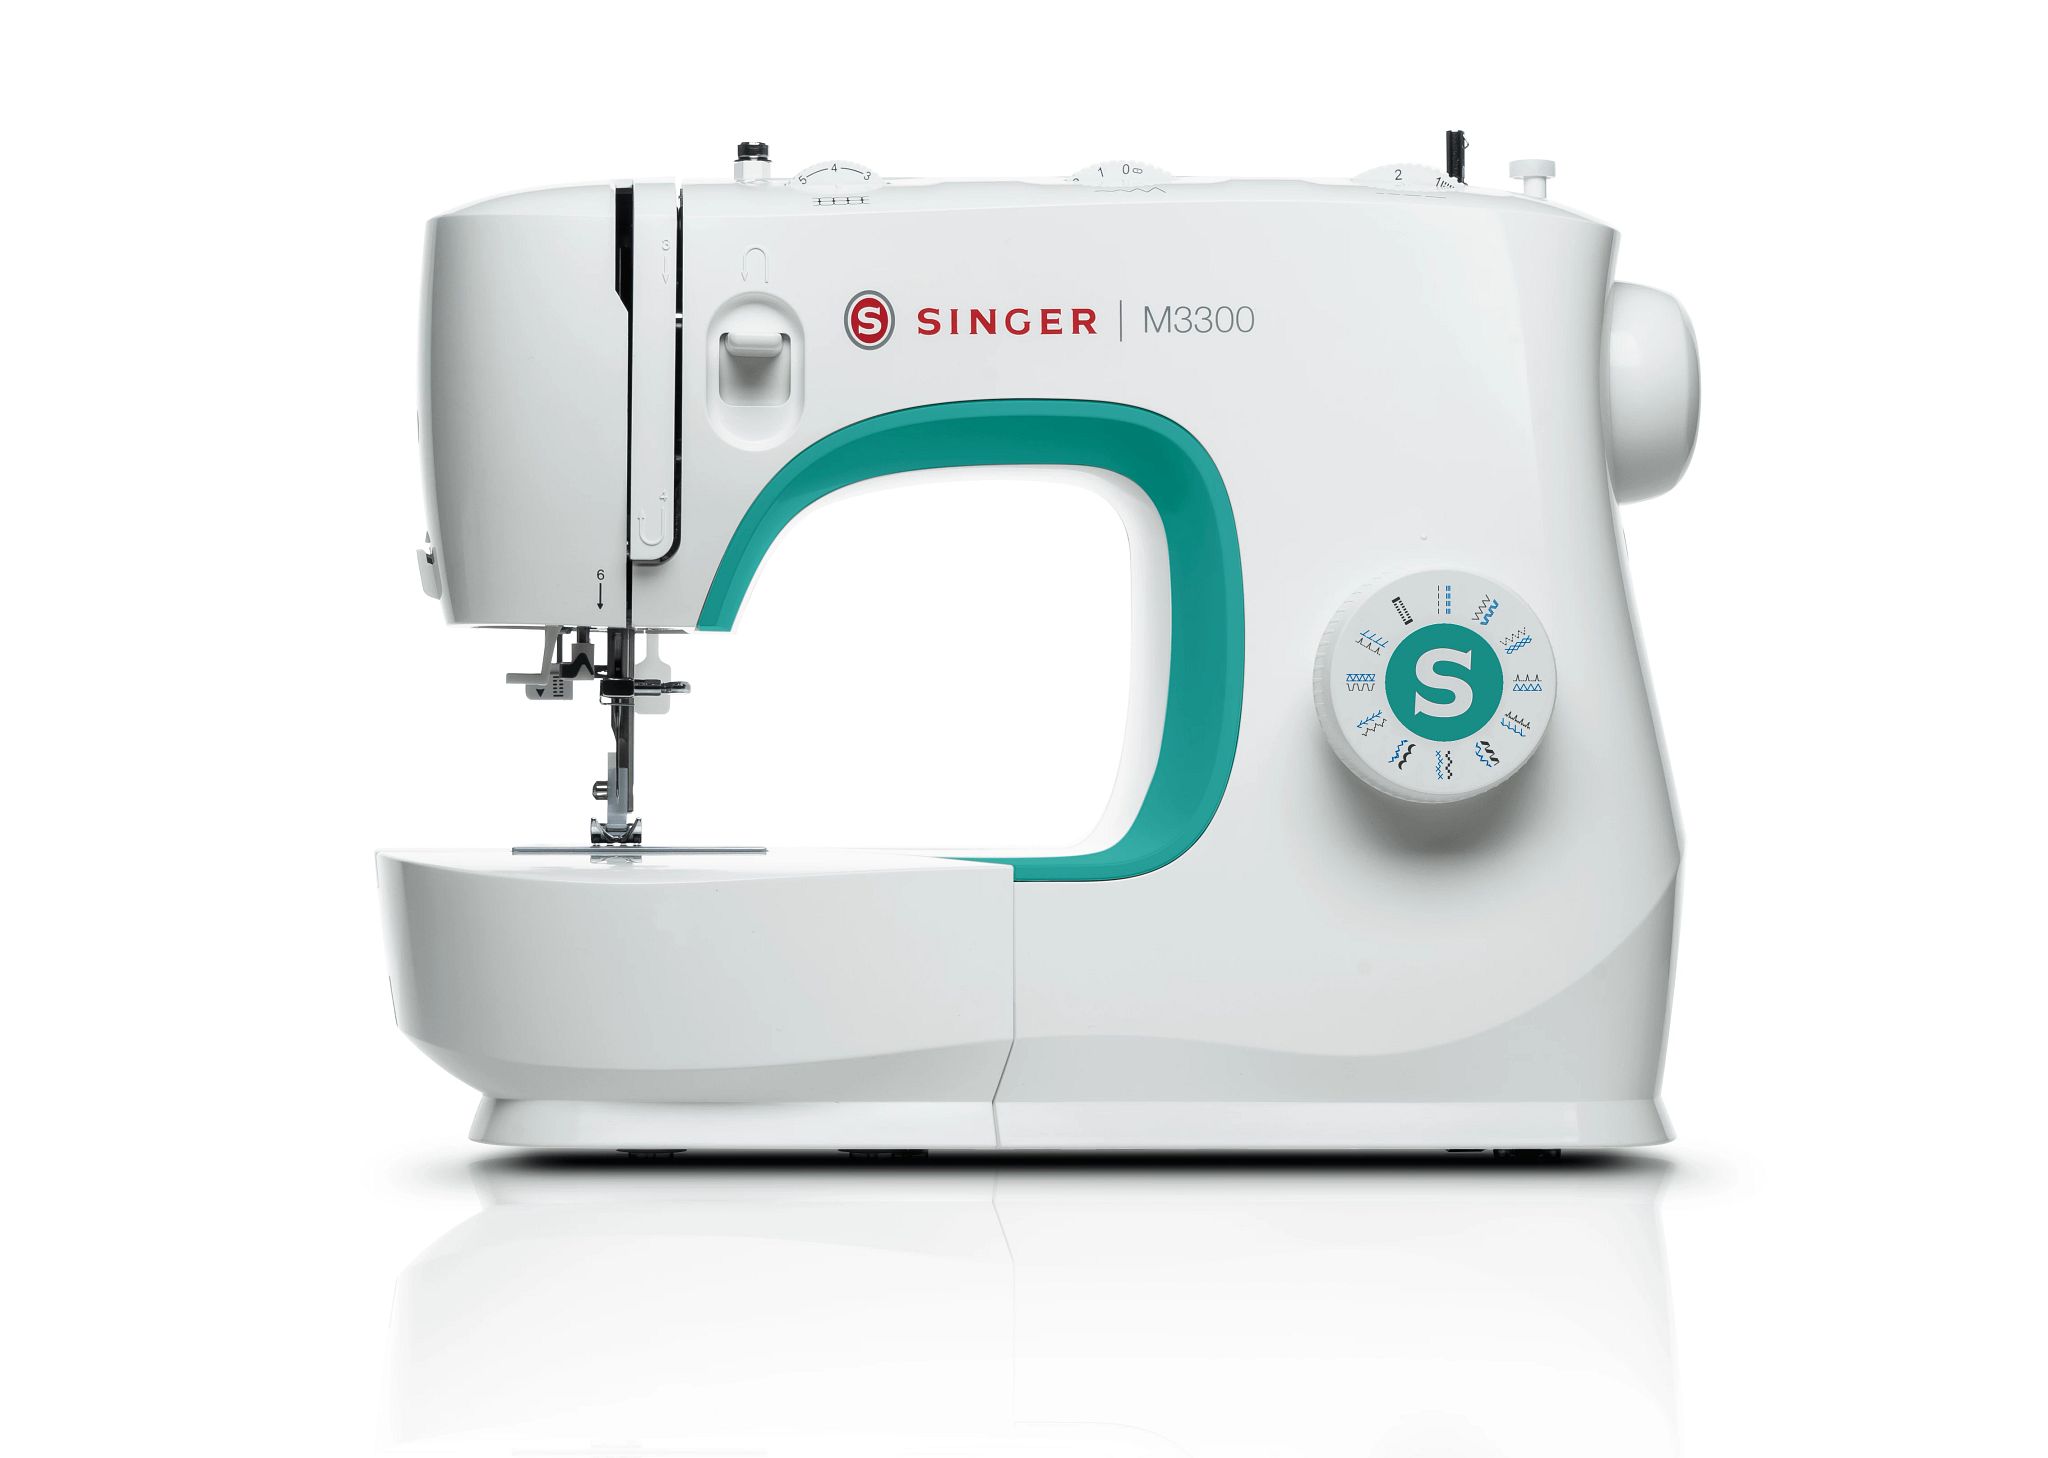 M3300 singer sewing machine